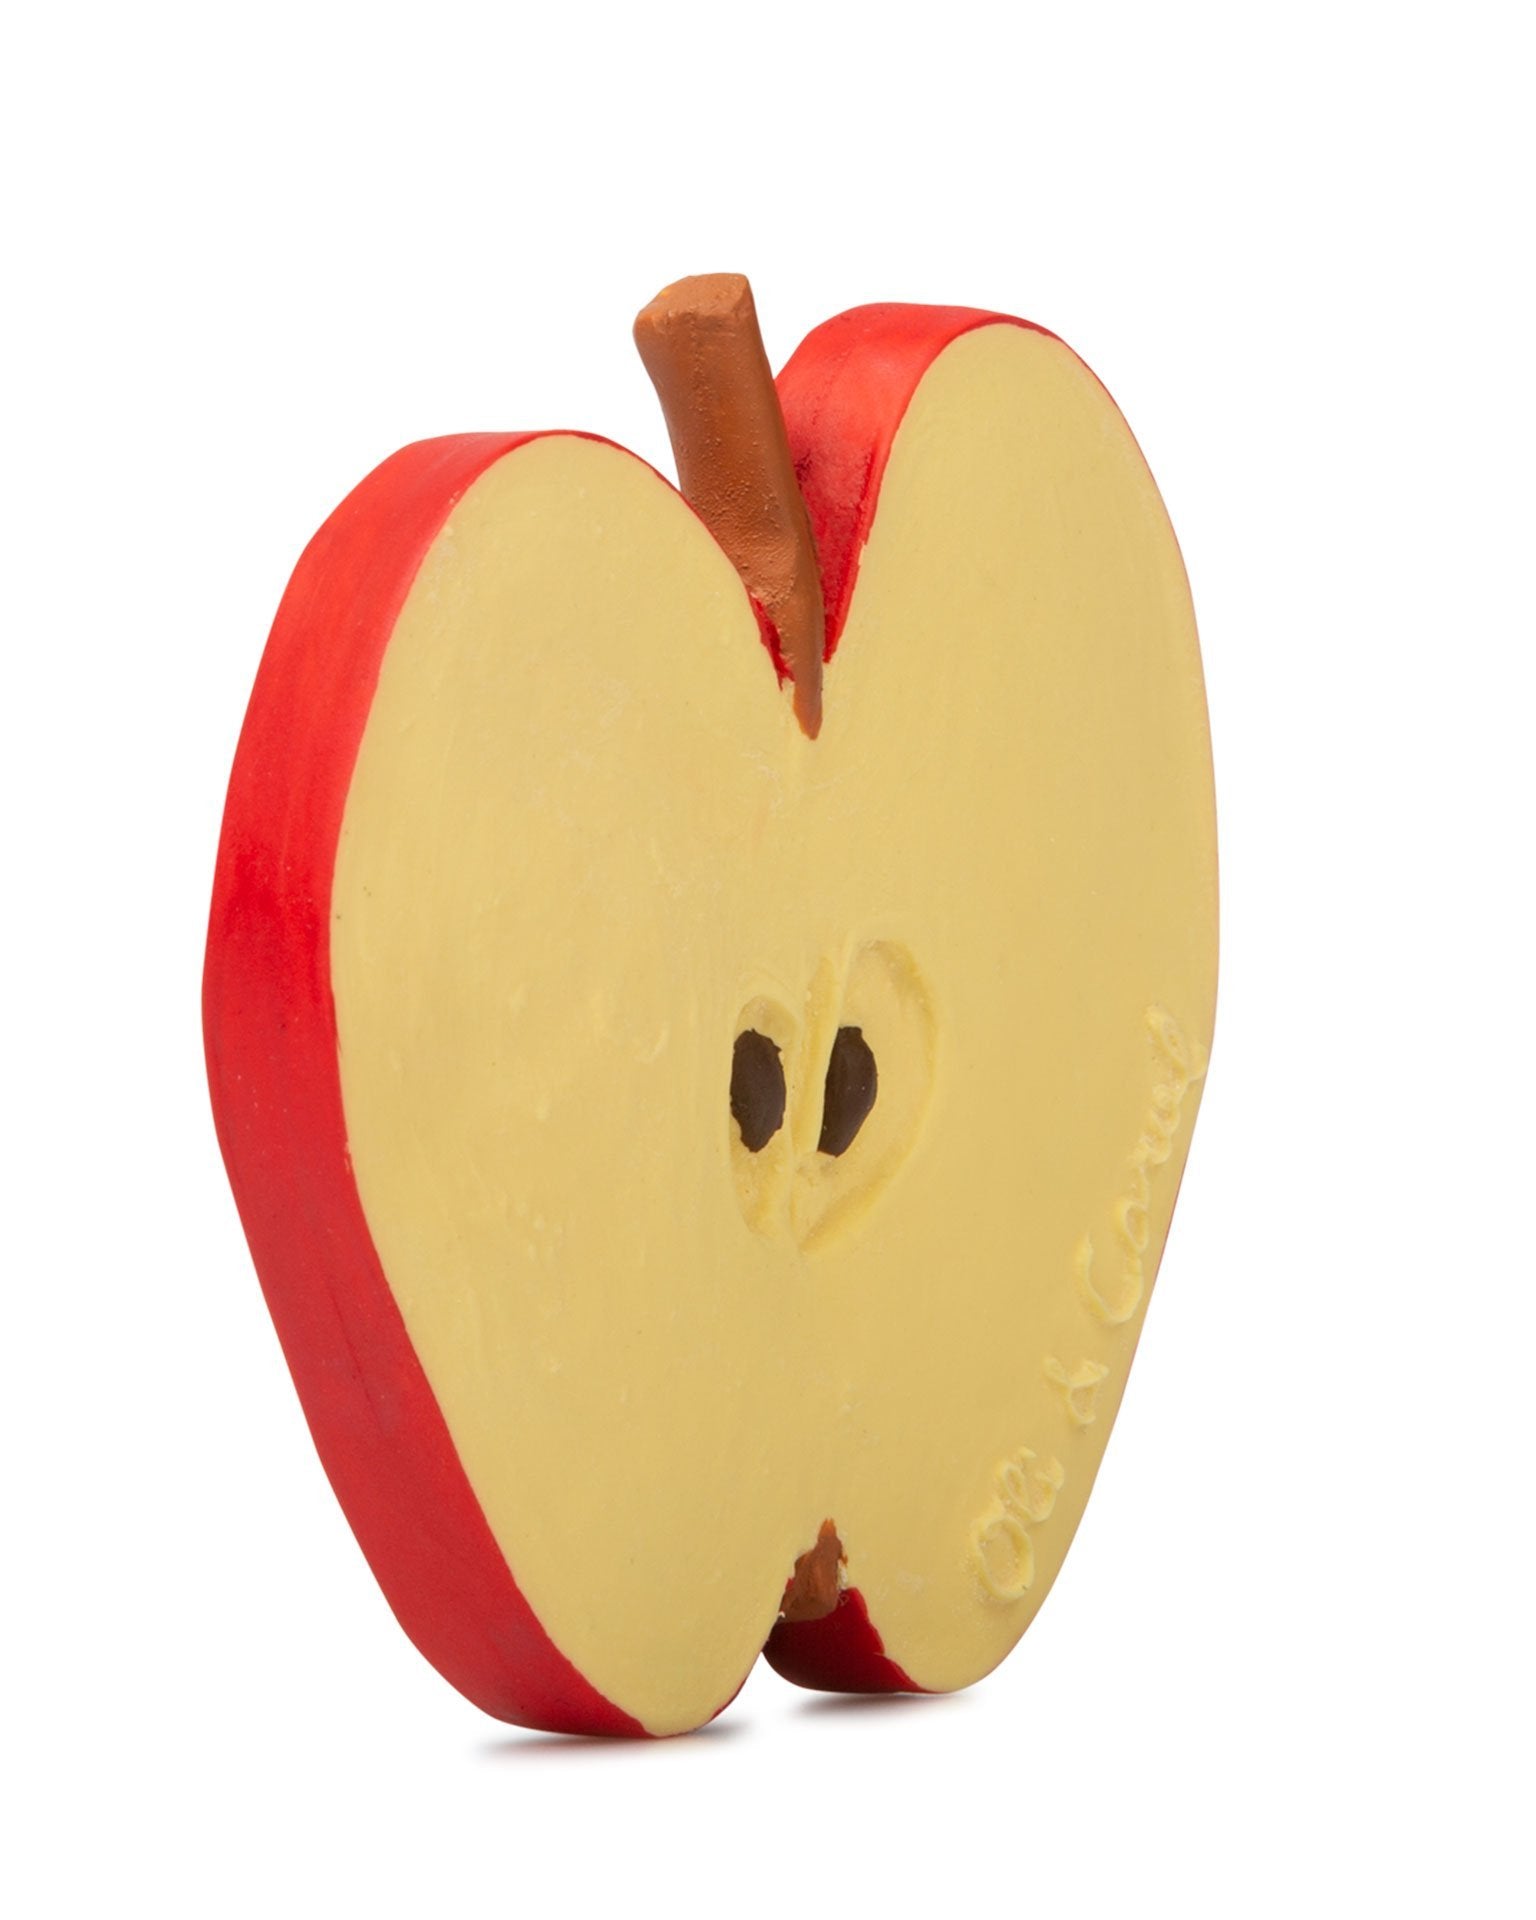 Little oli + carol play pepita the apple